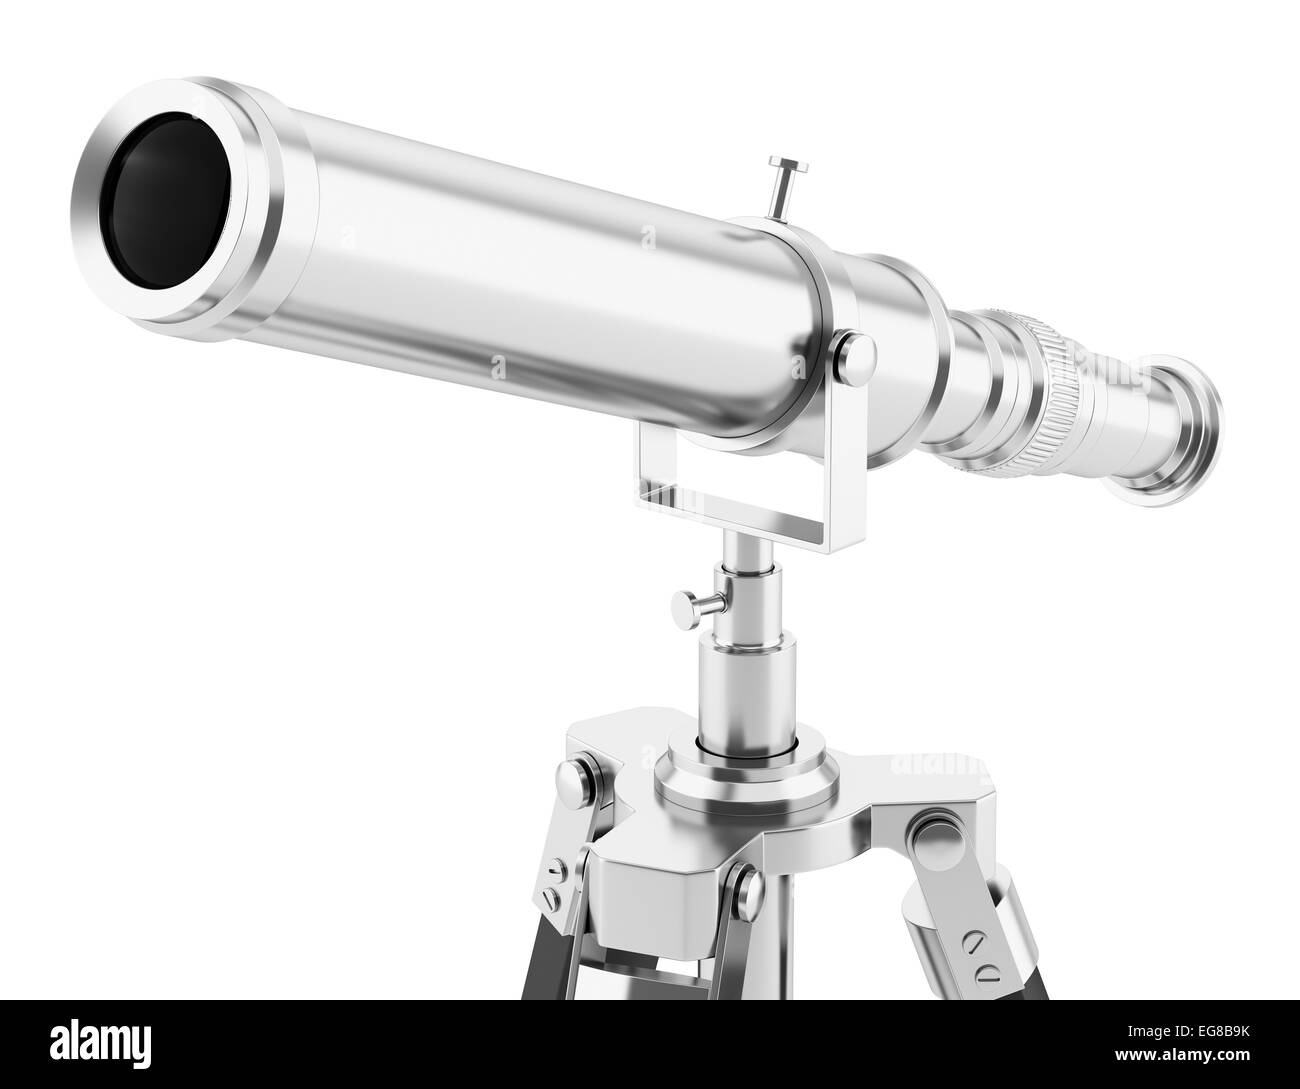 telescope on tripod isolated on white background Stock Photo